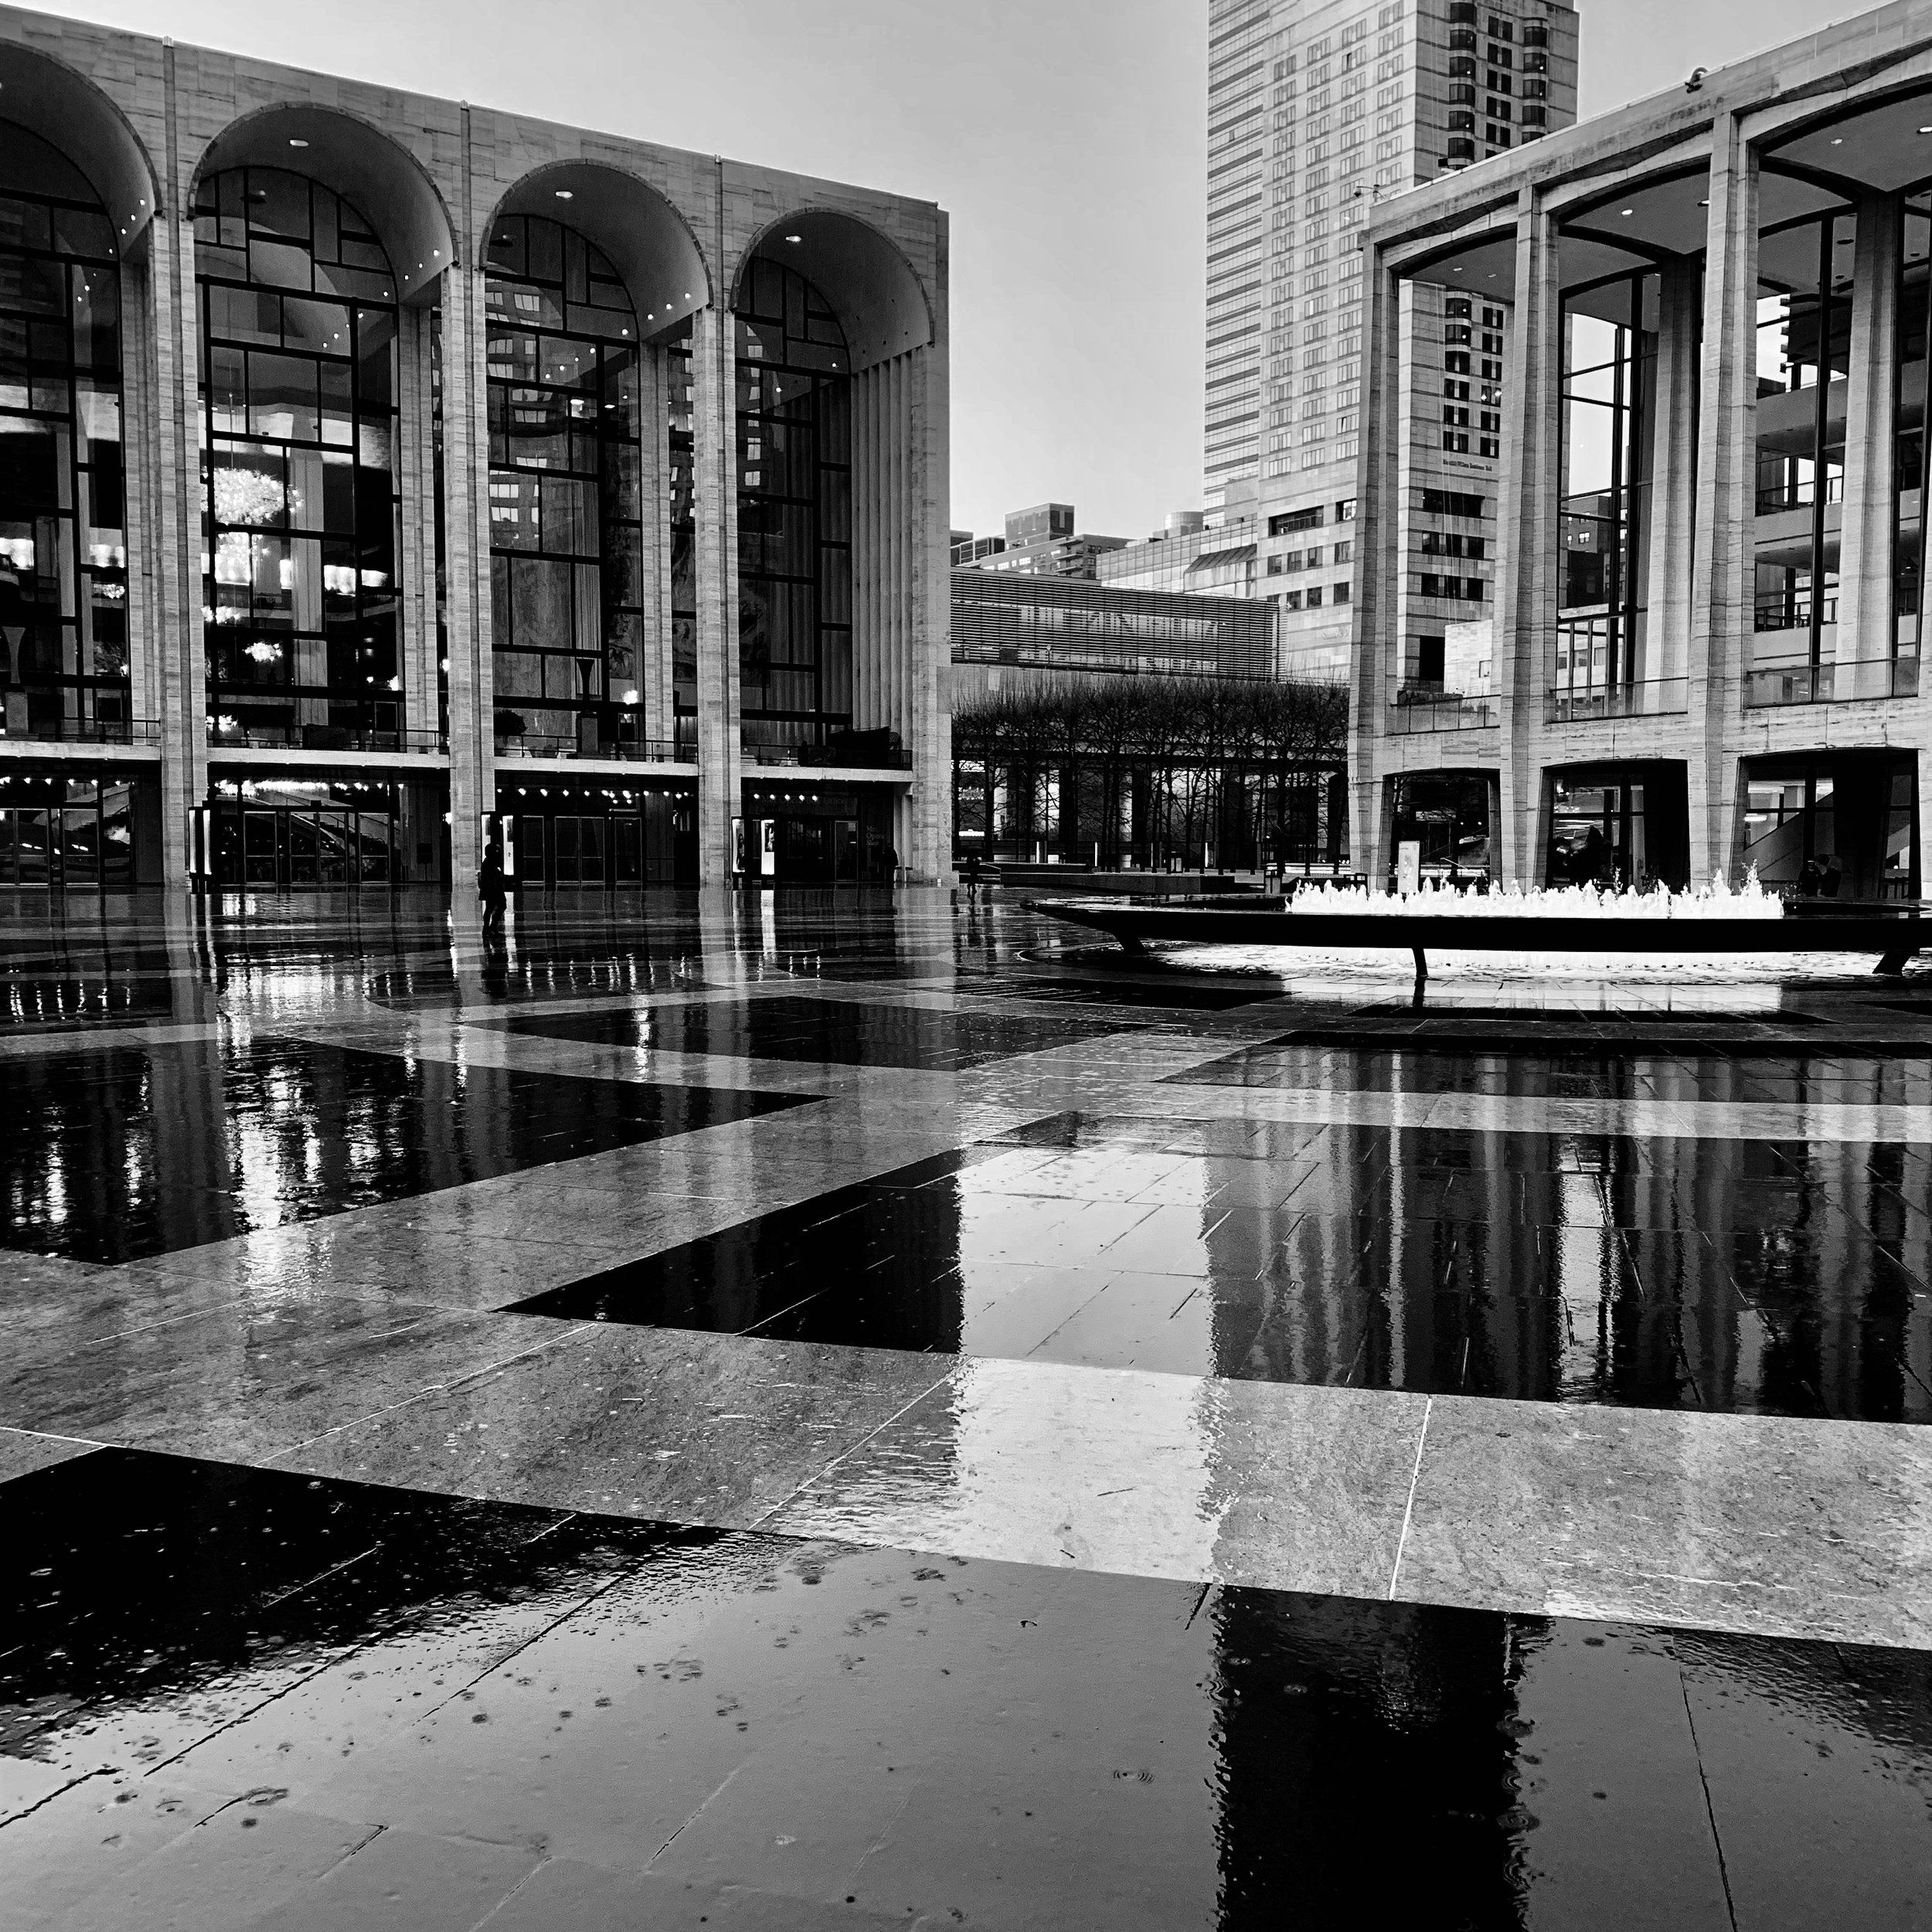 Lincoln Center.jpg